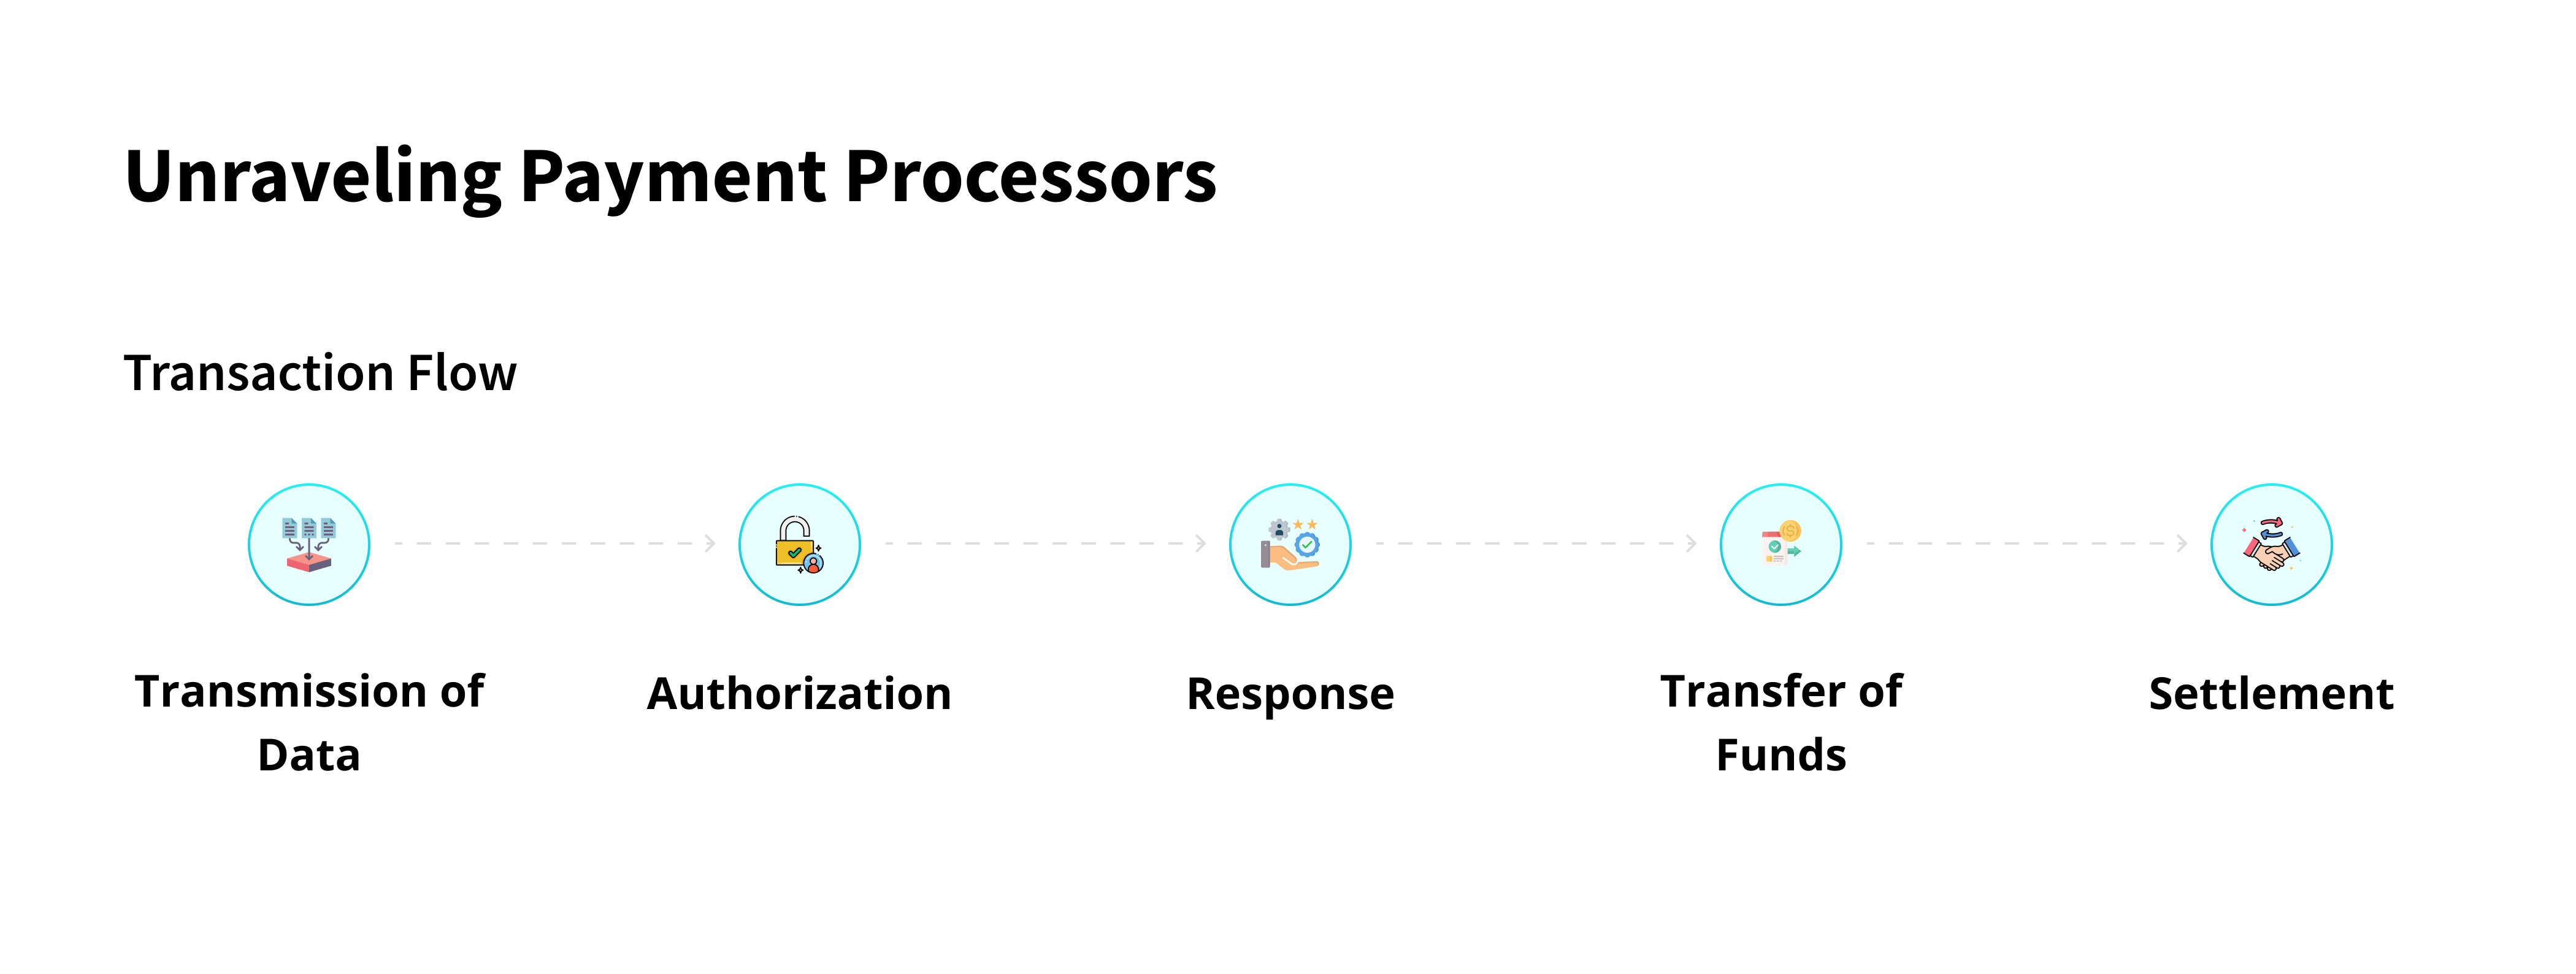 Payment Processor: transaction Flow